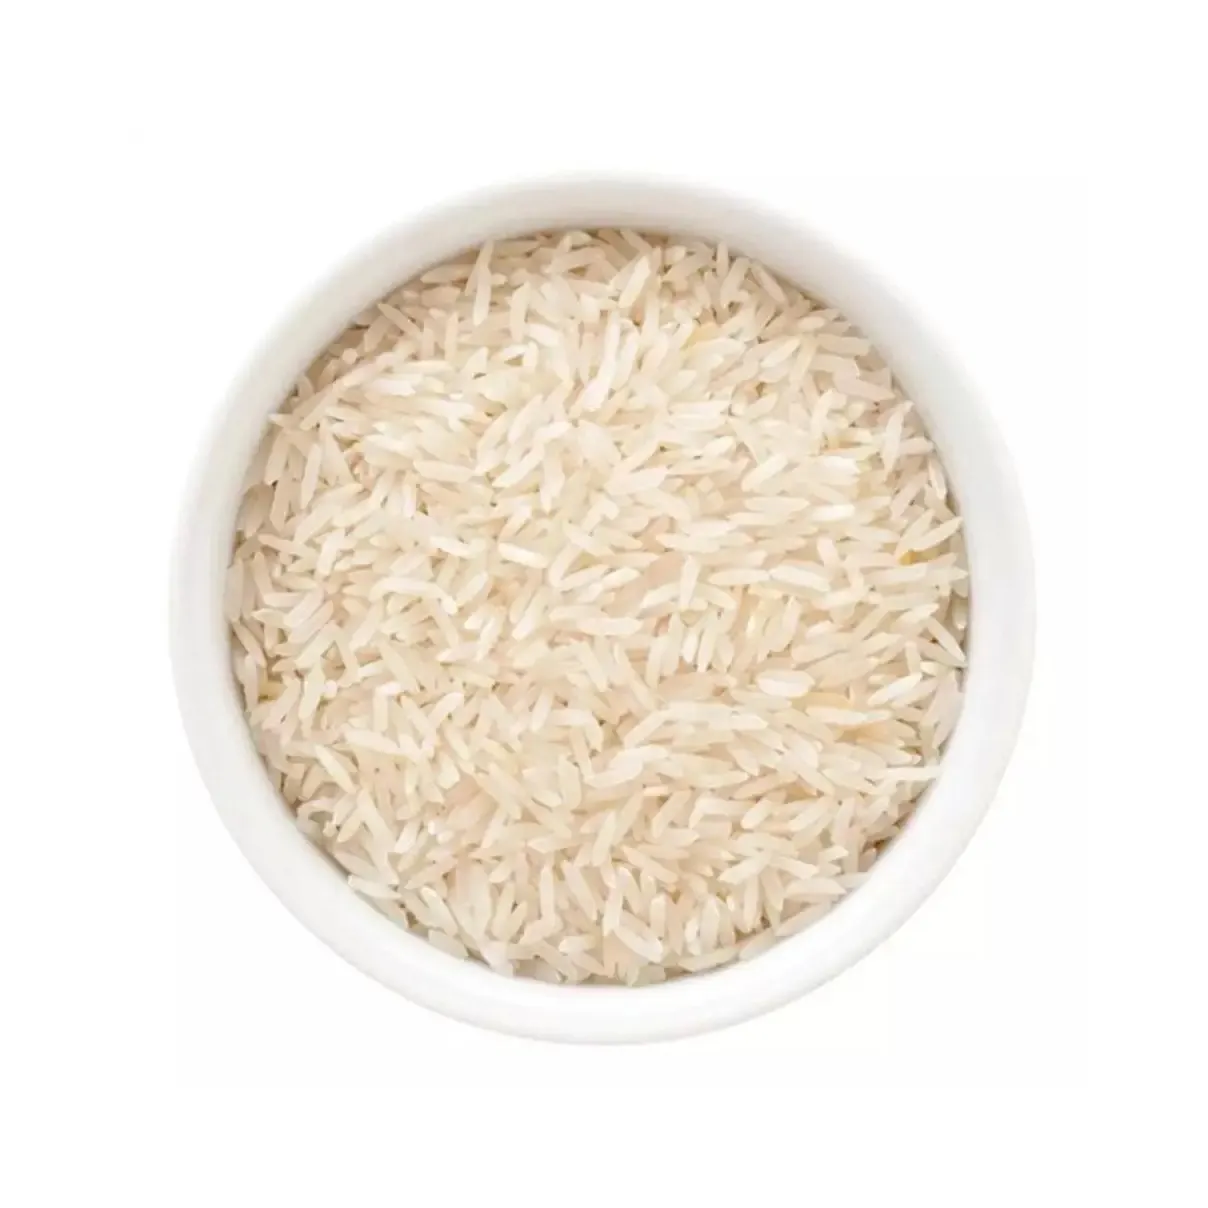 चमेली चावल के लिए बिक्री/लंबे समय से अनाज चावल थाईलैंड कीमत चमेली चावल